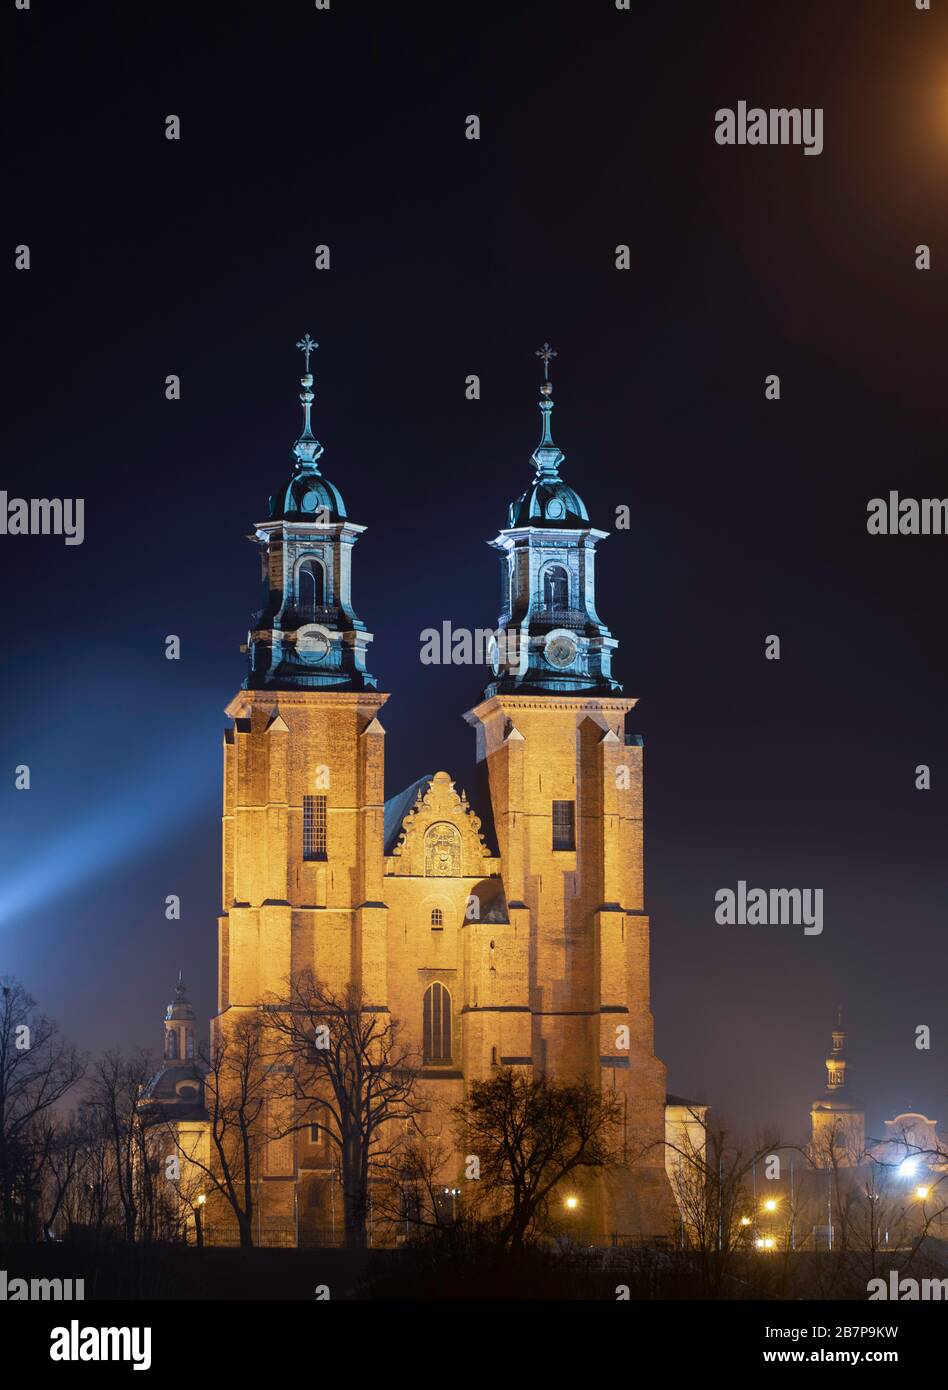 Gniezno / Polonia - edifici sacri della città vecchia, Cattedrale - architettura della prima capitale polacco. Foto Stock